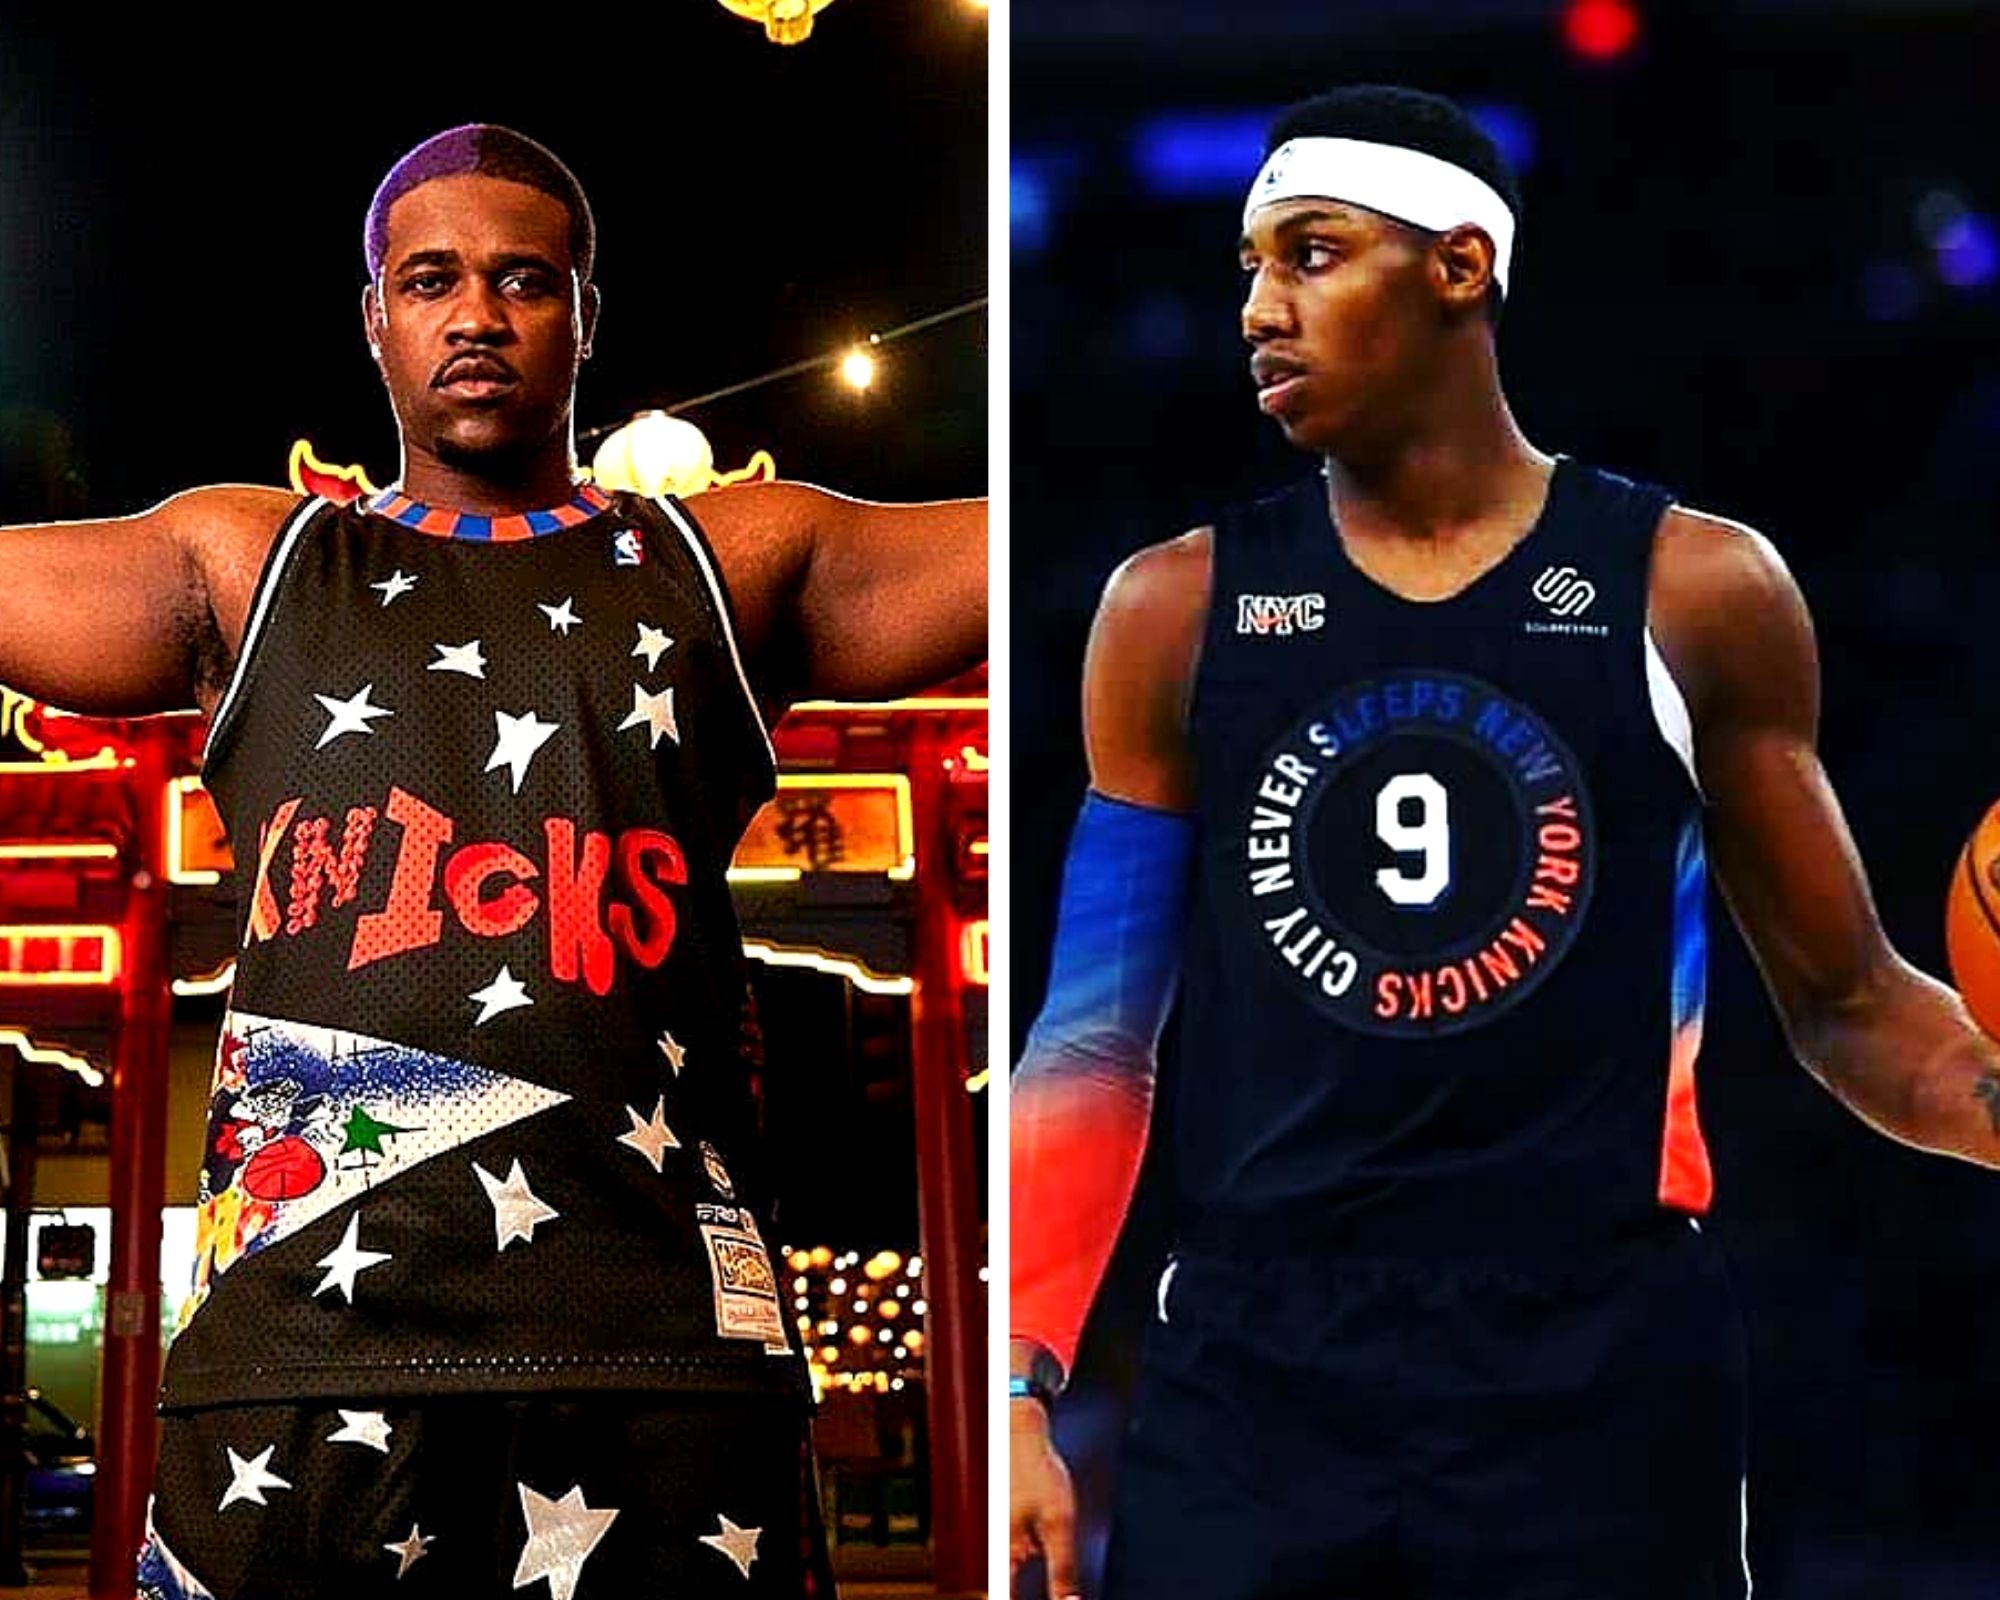 Cop or Drop these New Knicks Jerseys? - KNICKS FAN TV